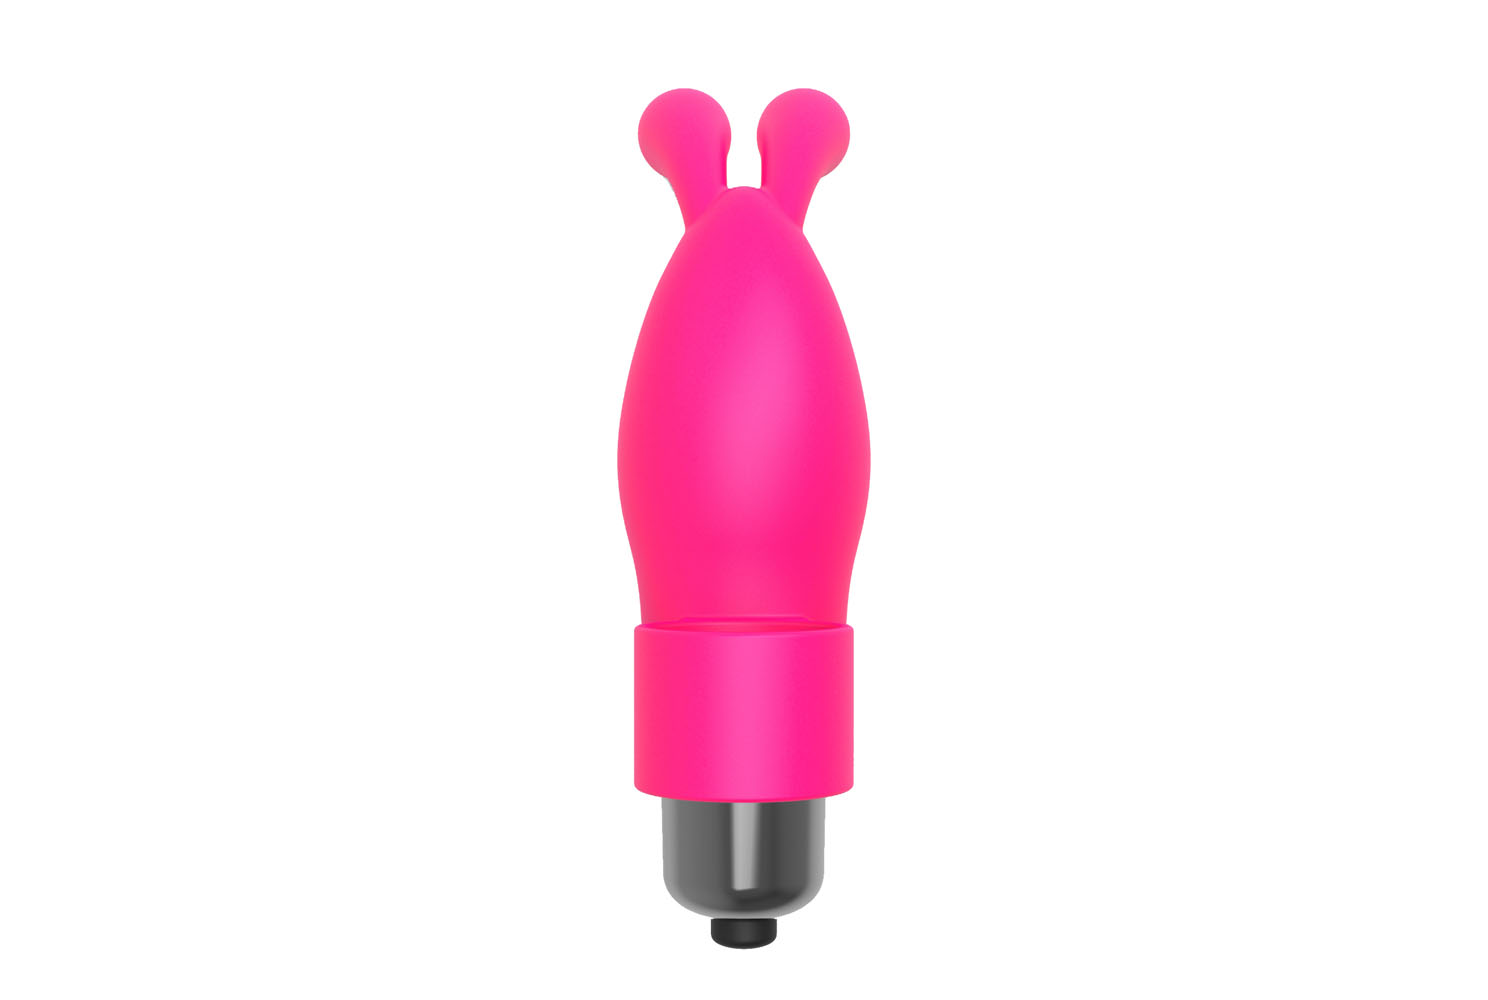 the s flirt bunny finger vibrator pink 